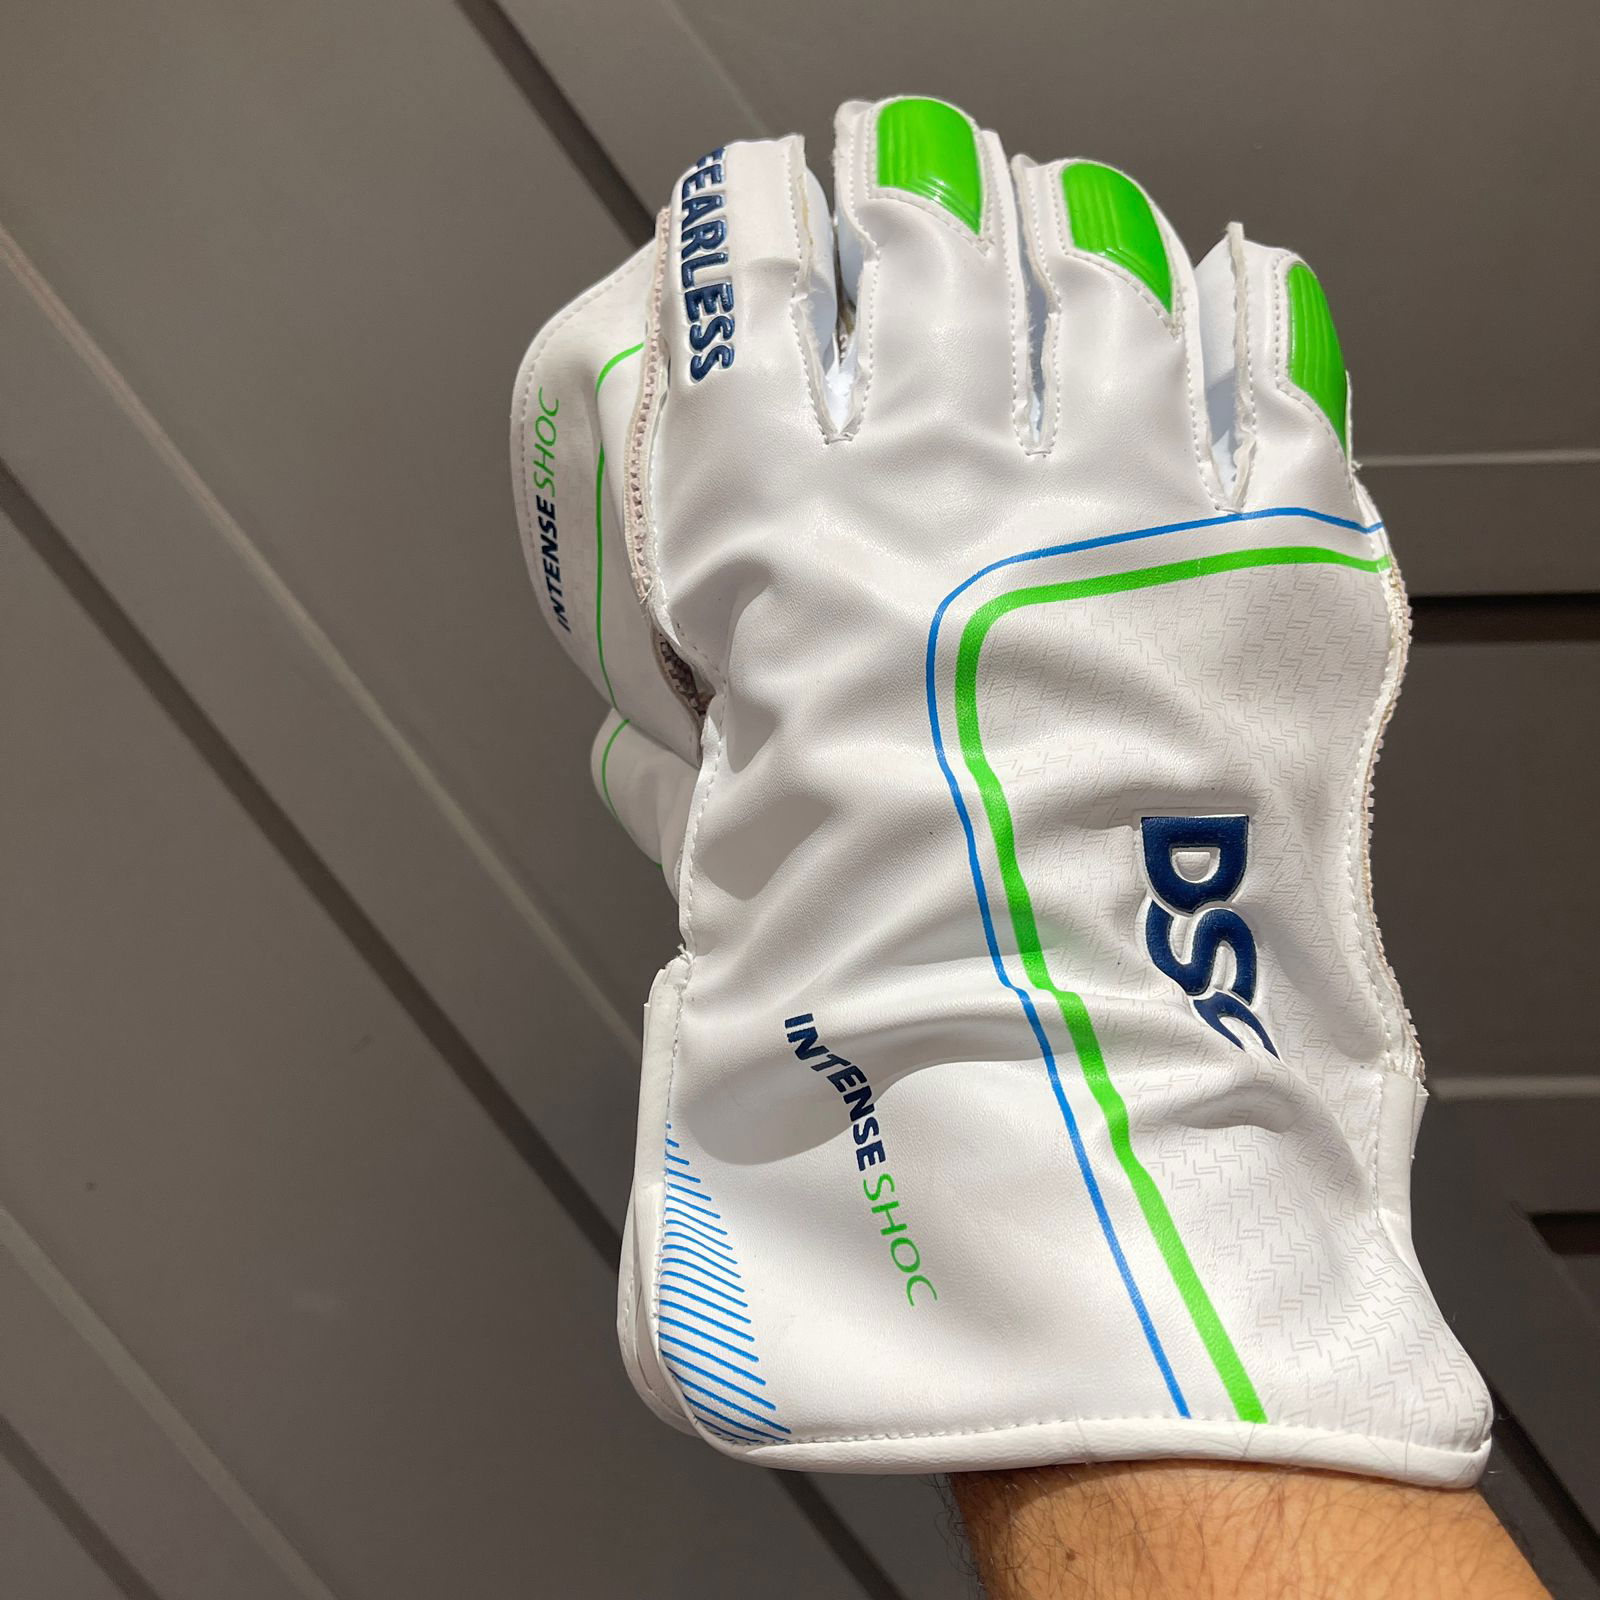 DSC Intense Shoc Wicketkeeping Gloves